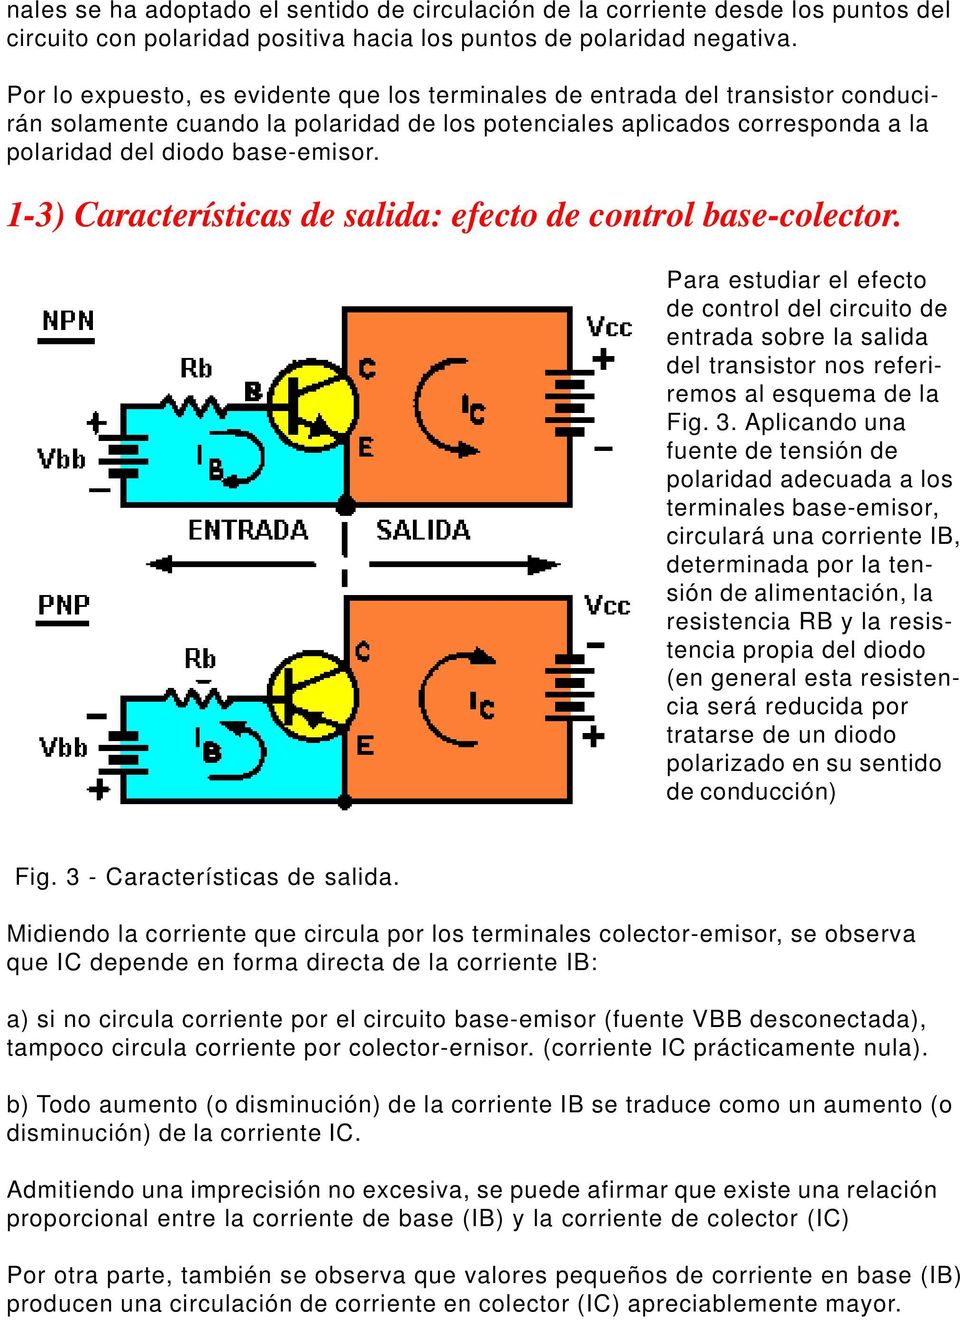 1-3) Características de salida: efecto de control base-colector. Para estudiar el efecto de control del circuito de entrada sobre la salida del transistor nos referiremos al esquema de la Fig. 3.